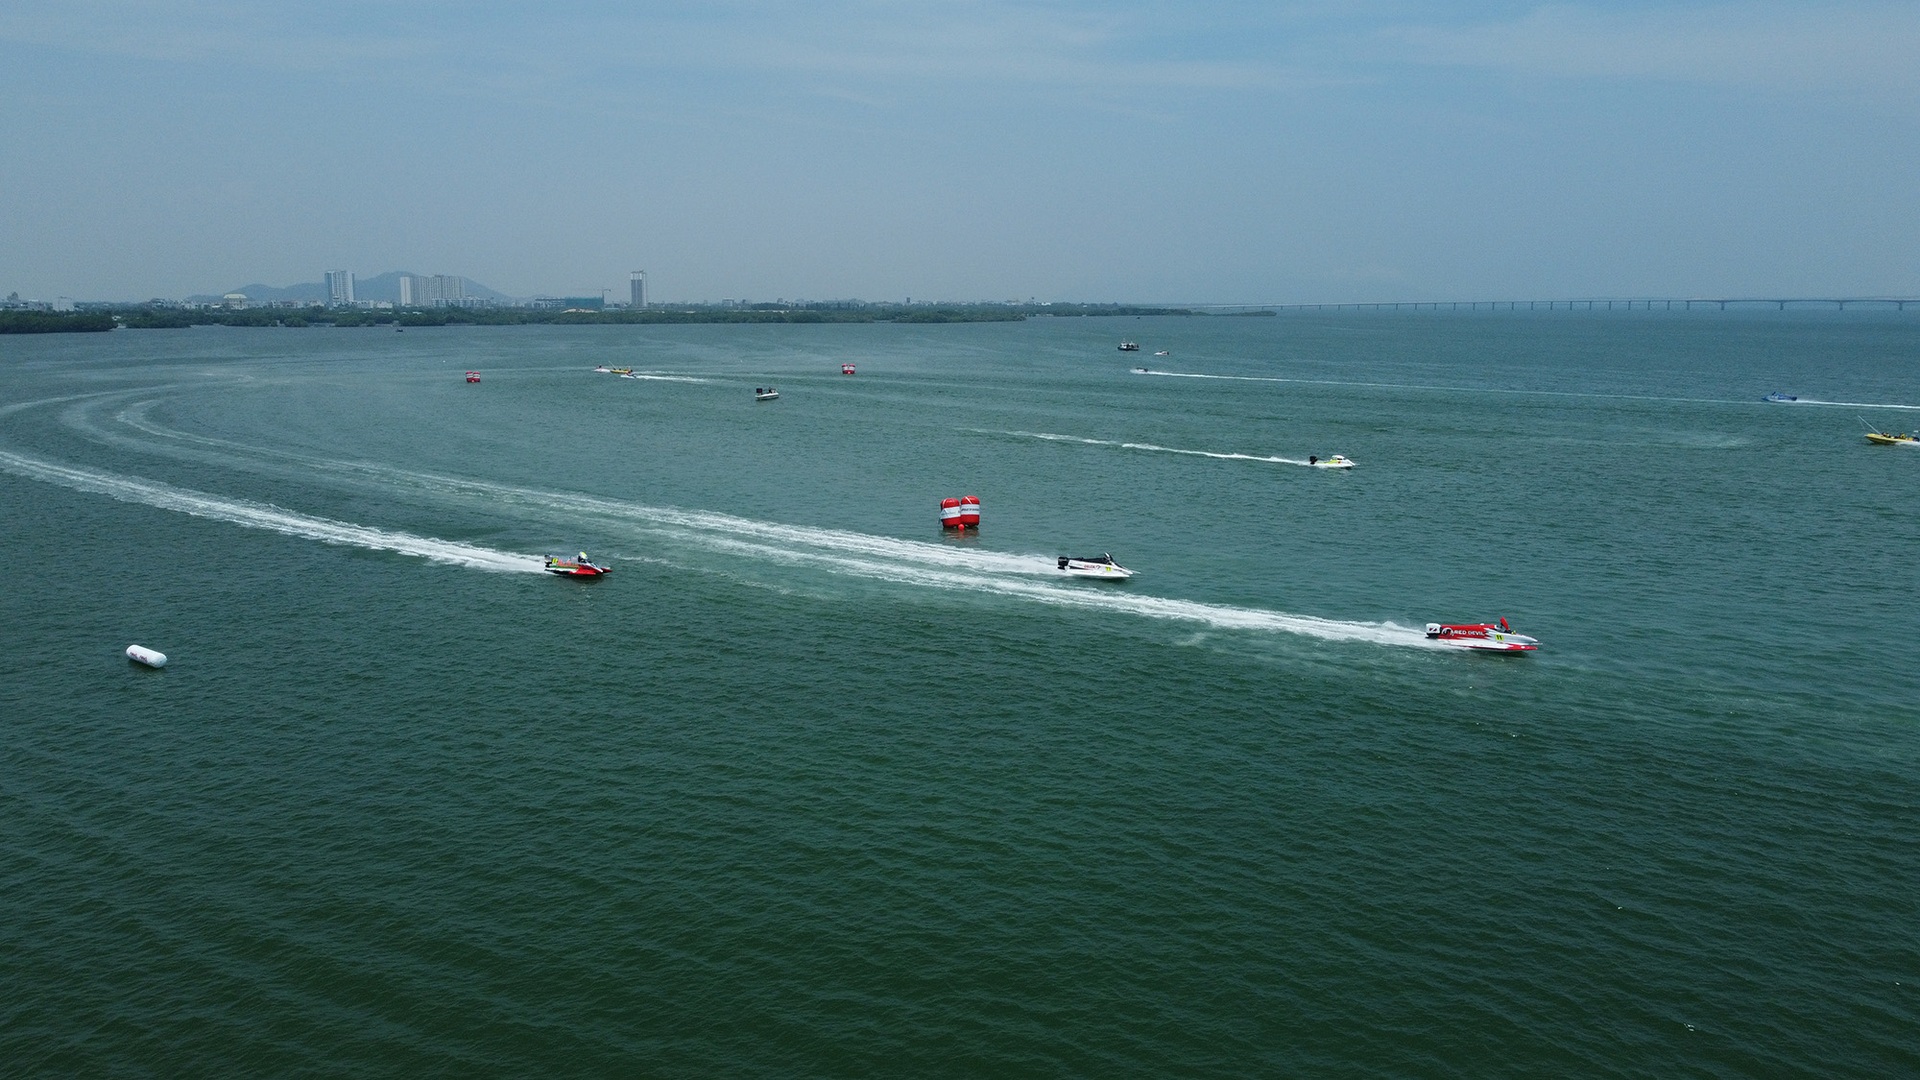 Tay đua Bình Định dừng cuộc chơi sớm ở vòng chung kết giải thuyền máy nhà nghề - 8